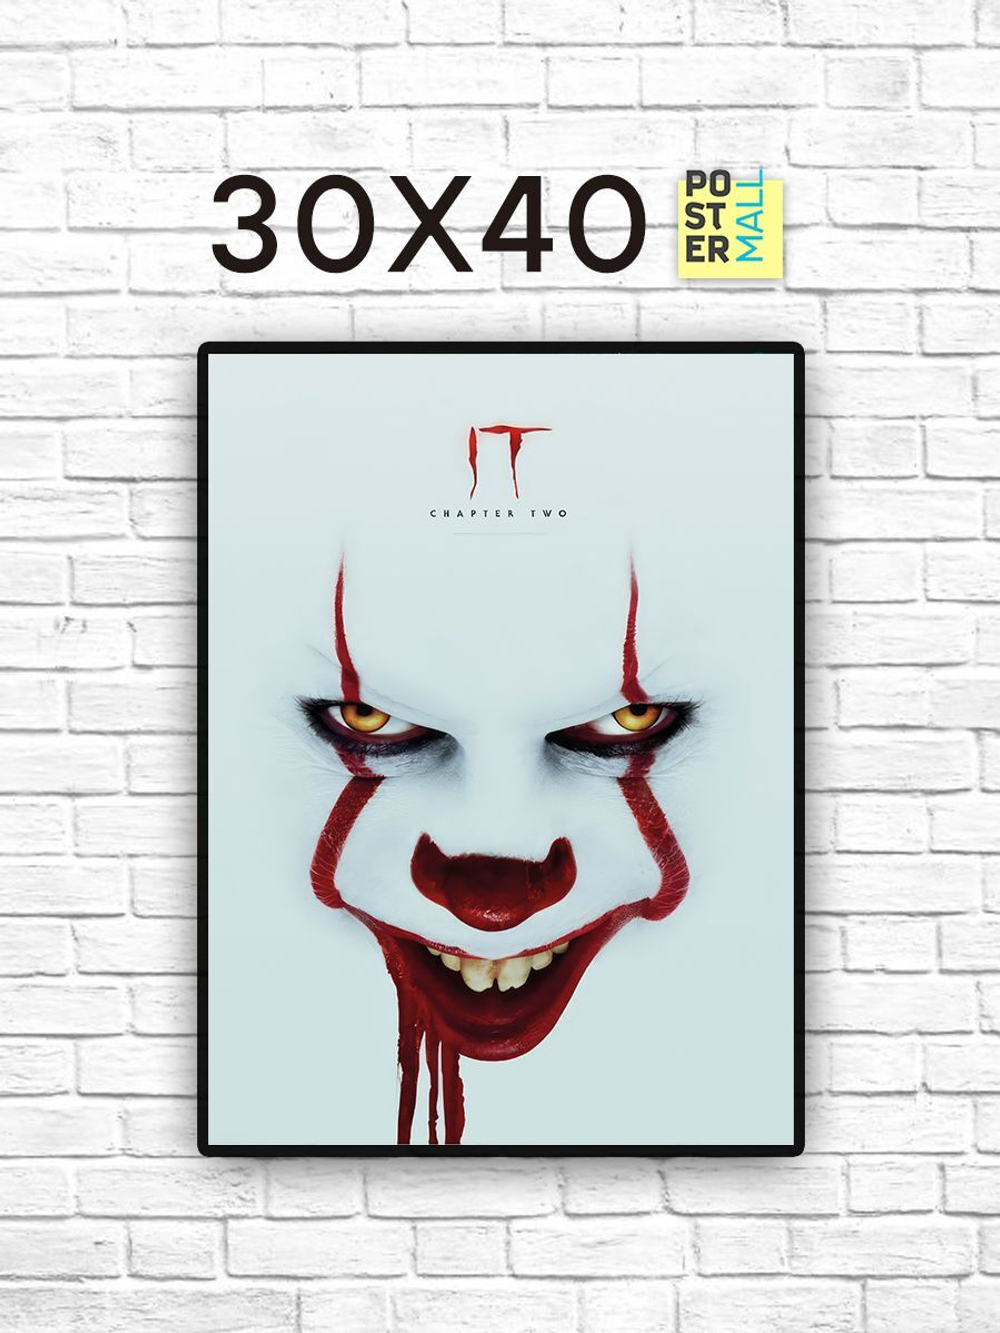 Постер для интерьера на стену 30х40 см. Фильм ужасов "Оно 2" (IT 2)